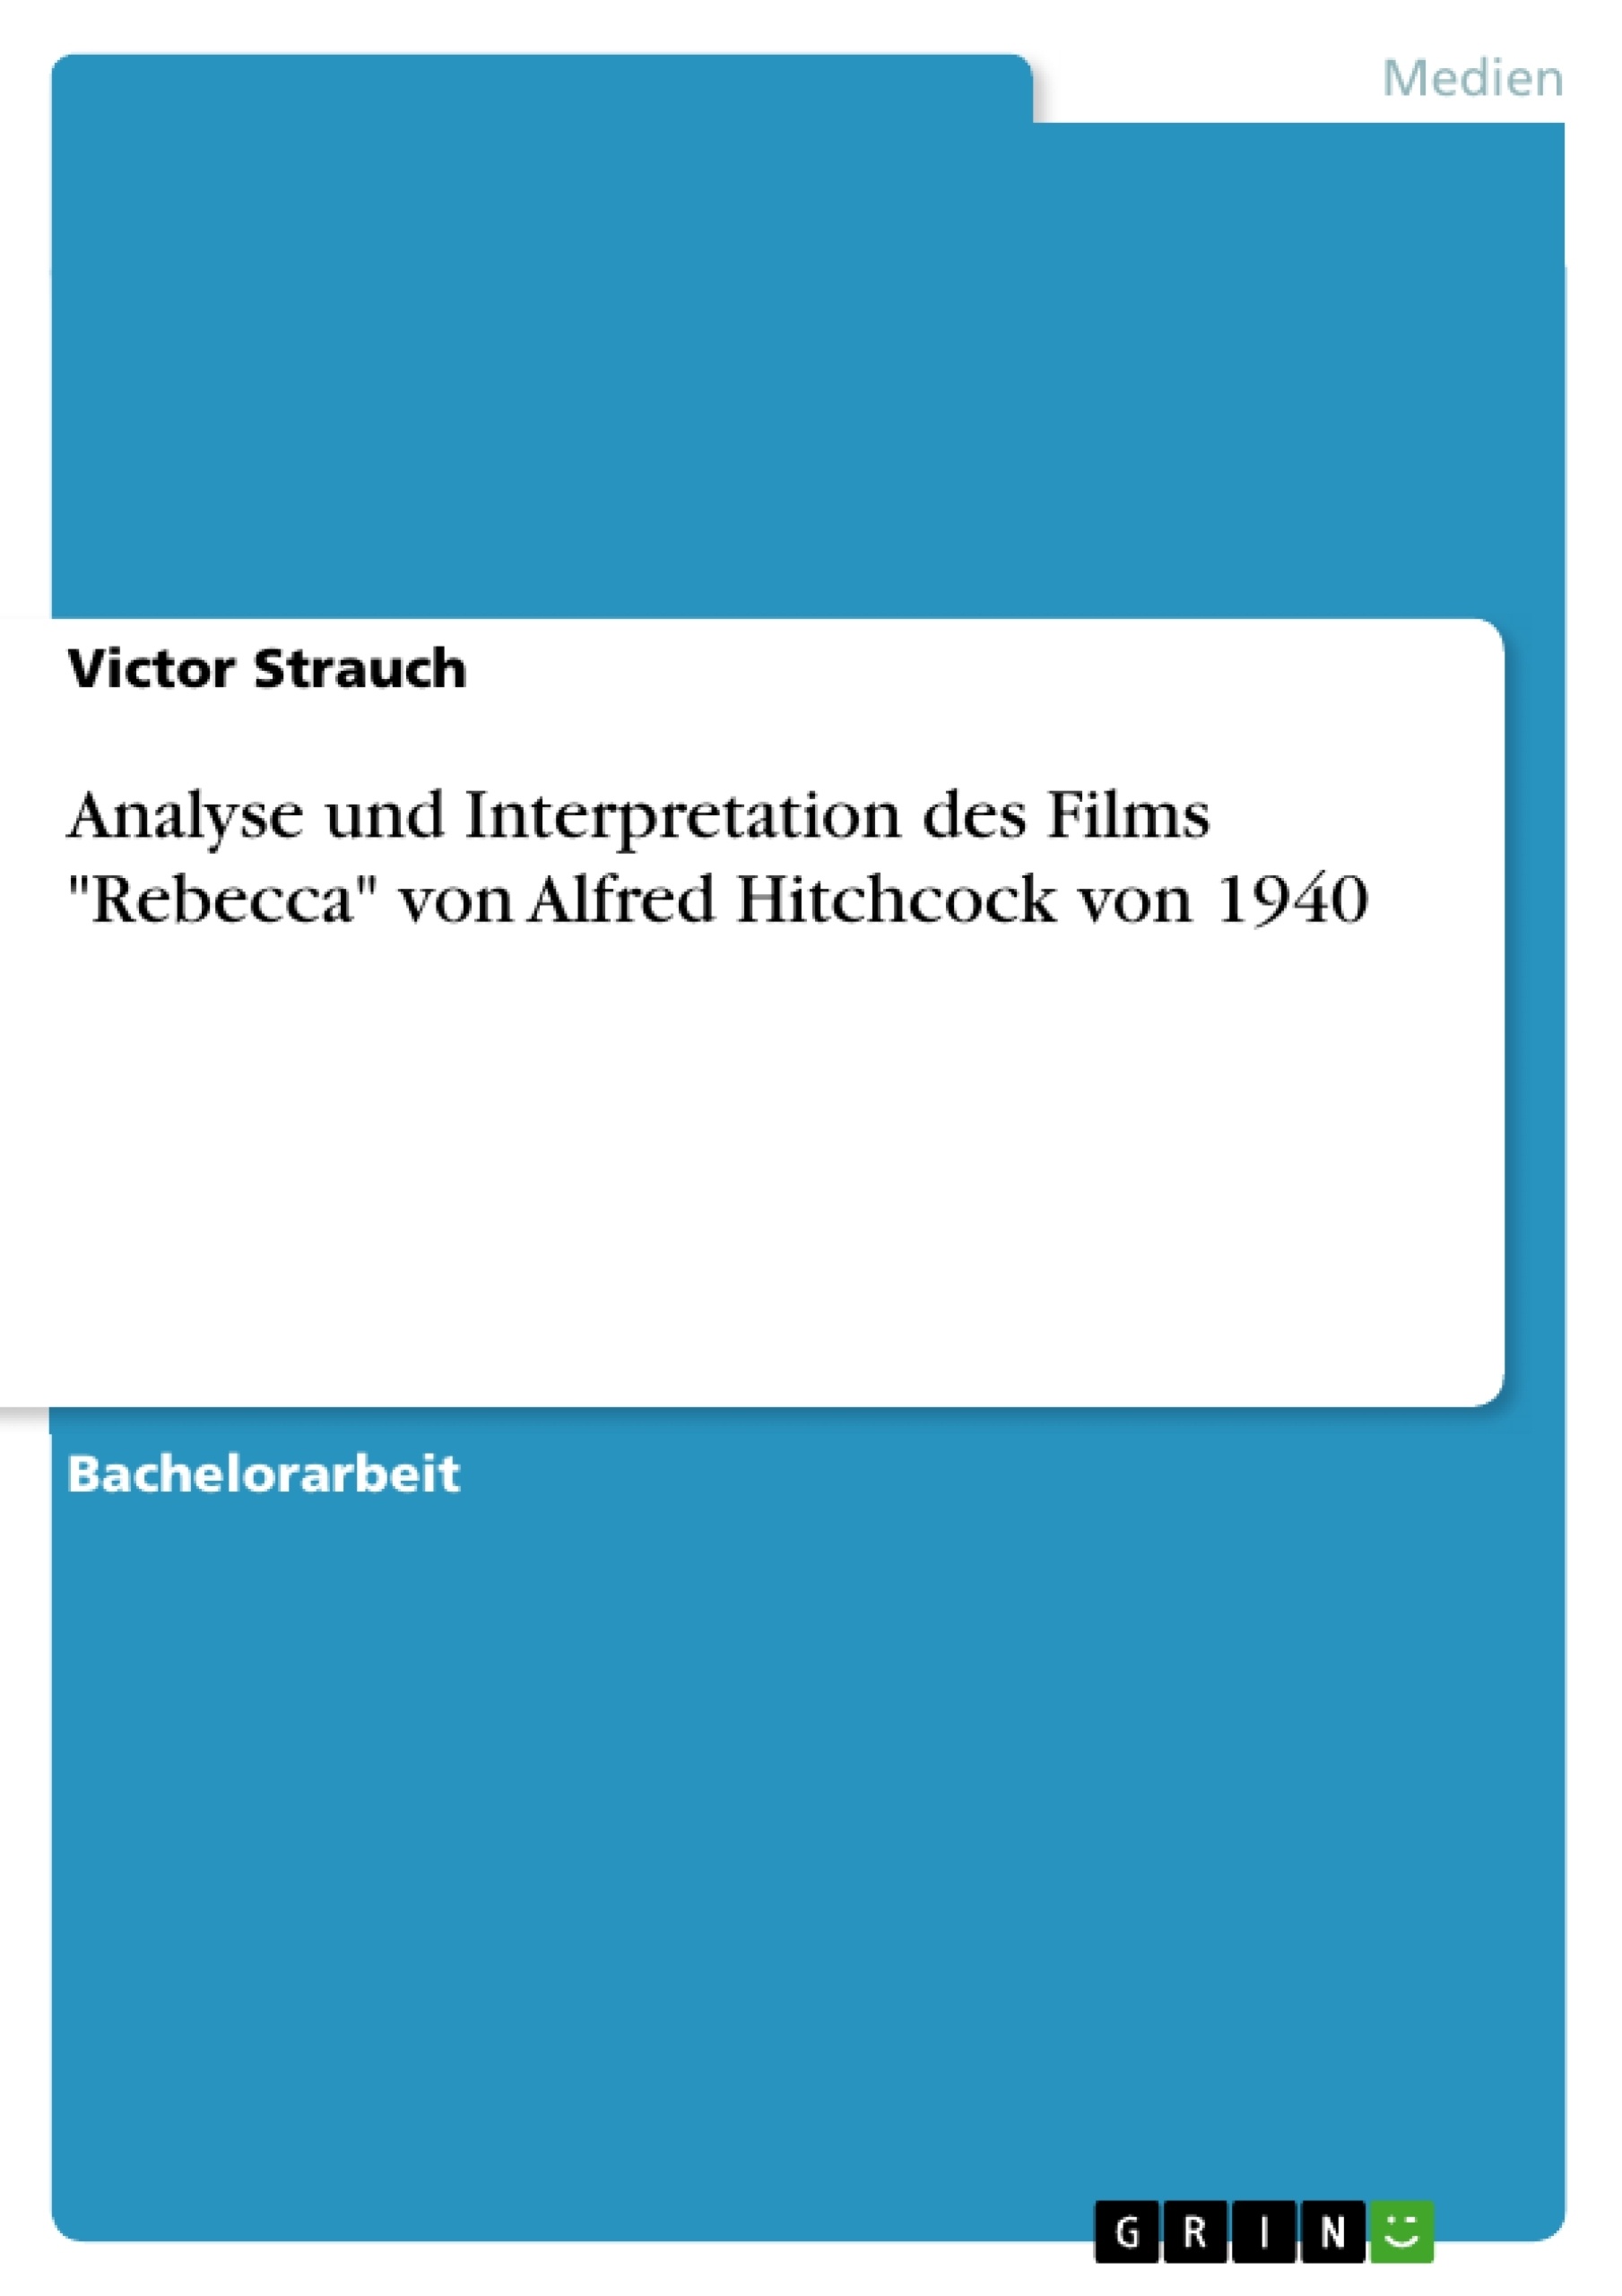 Titre: Analyse und Interpretation des Films "Rebecca" von Alfred Hitchcock von 1940